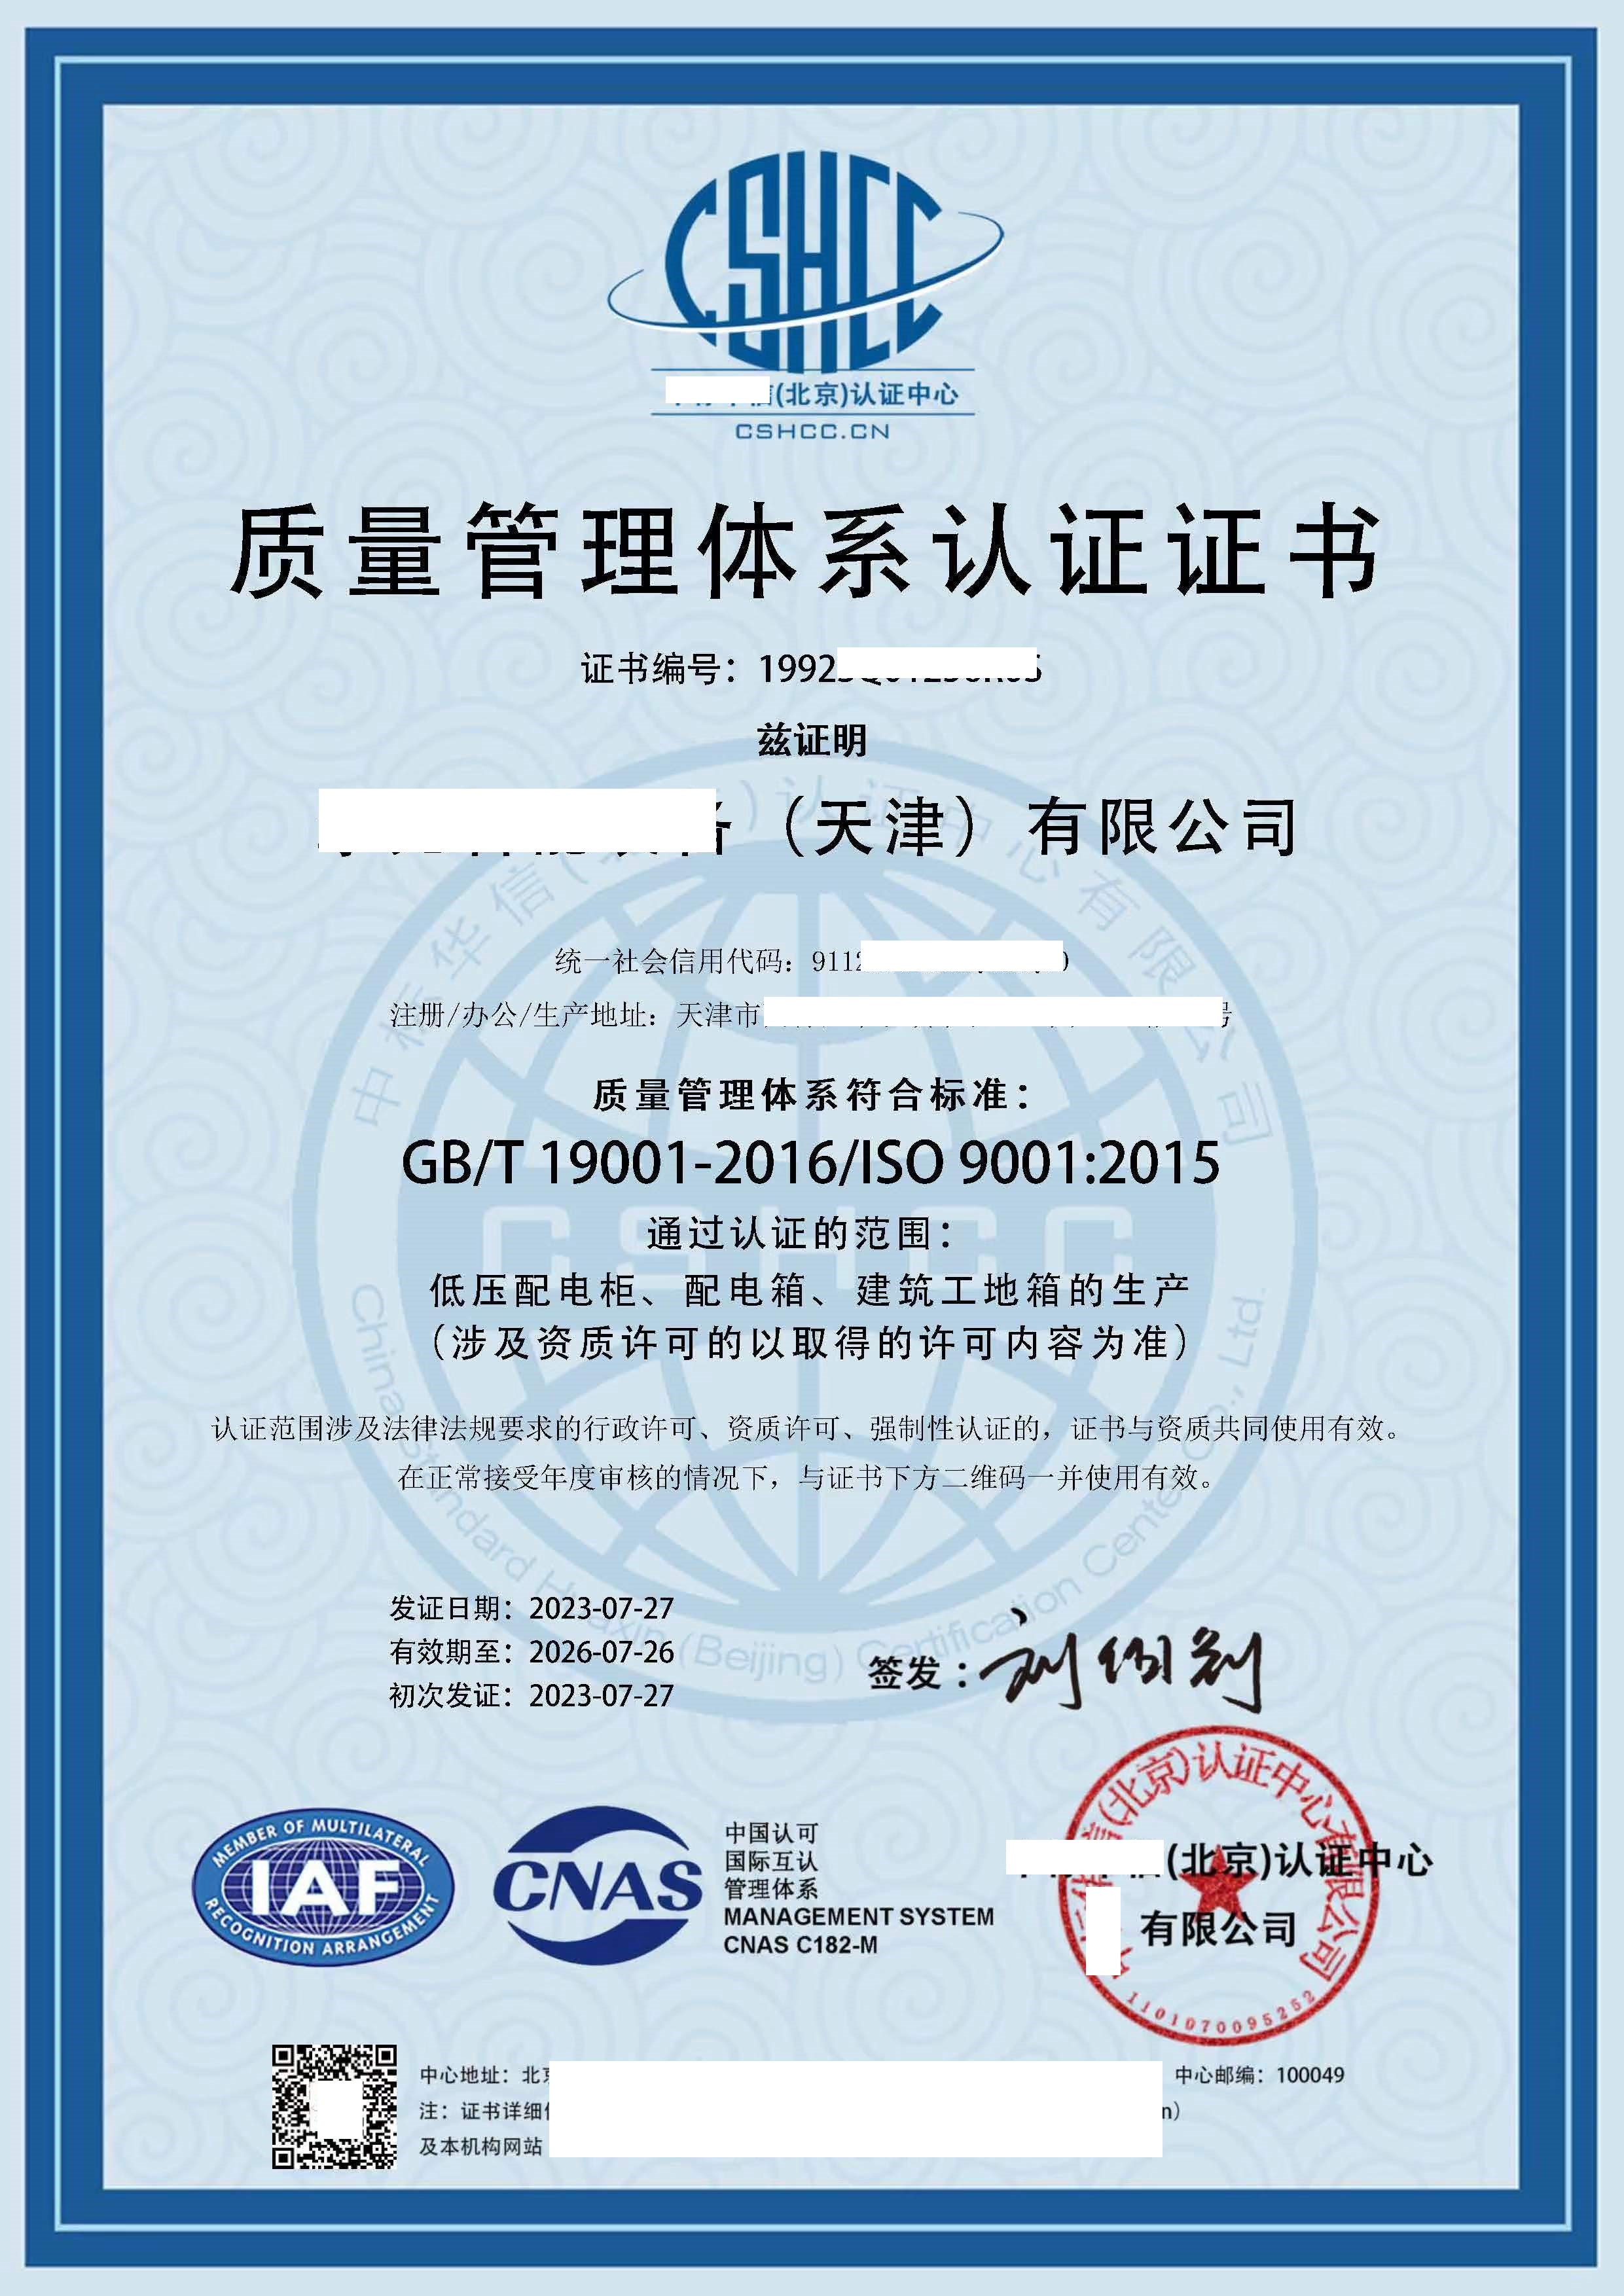 恭喜****装备（天津）有限公司获得质量/环境/职业健康安全管理体系认证证书